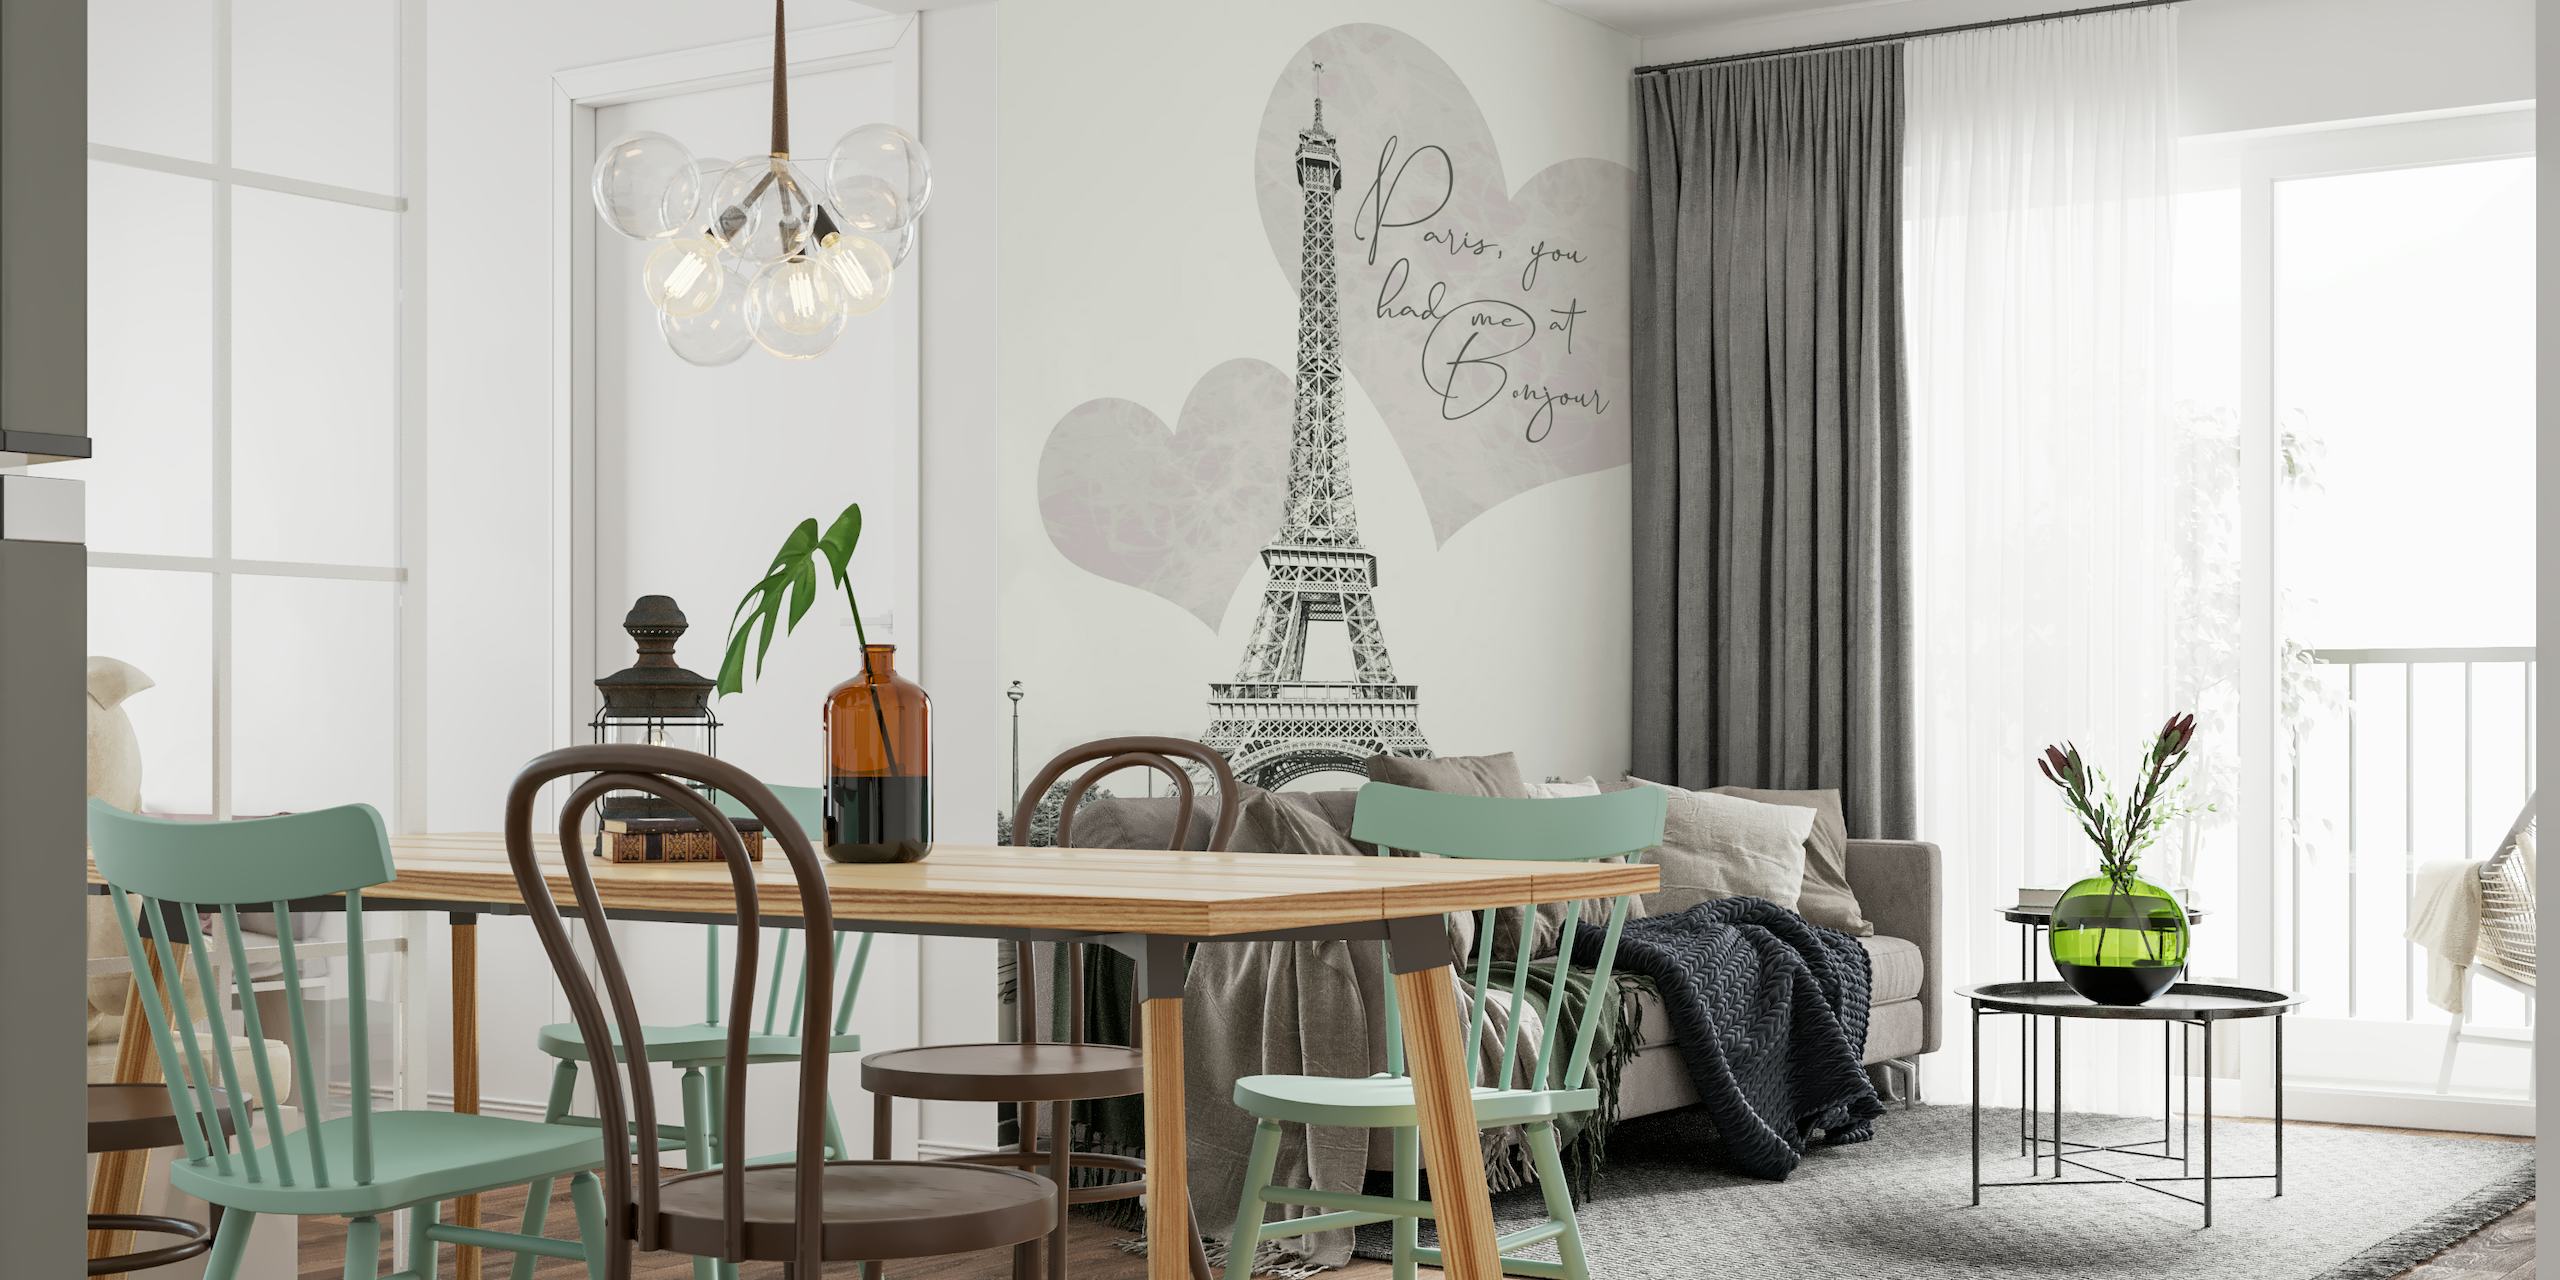 Torre Eiffel com formatos de coração românticos e mural de citações 'Paris, você me teve no BONJOUR'